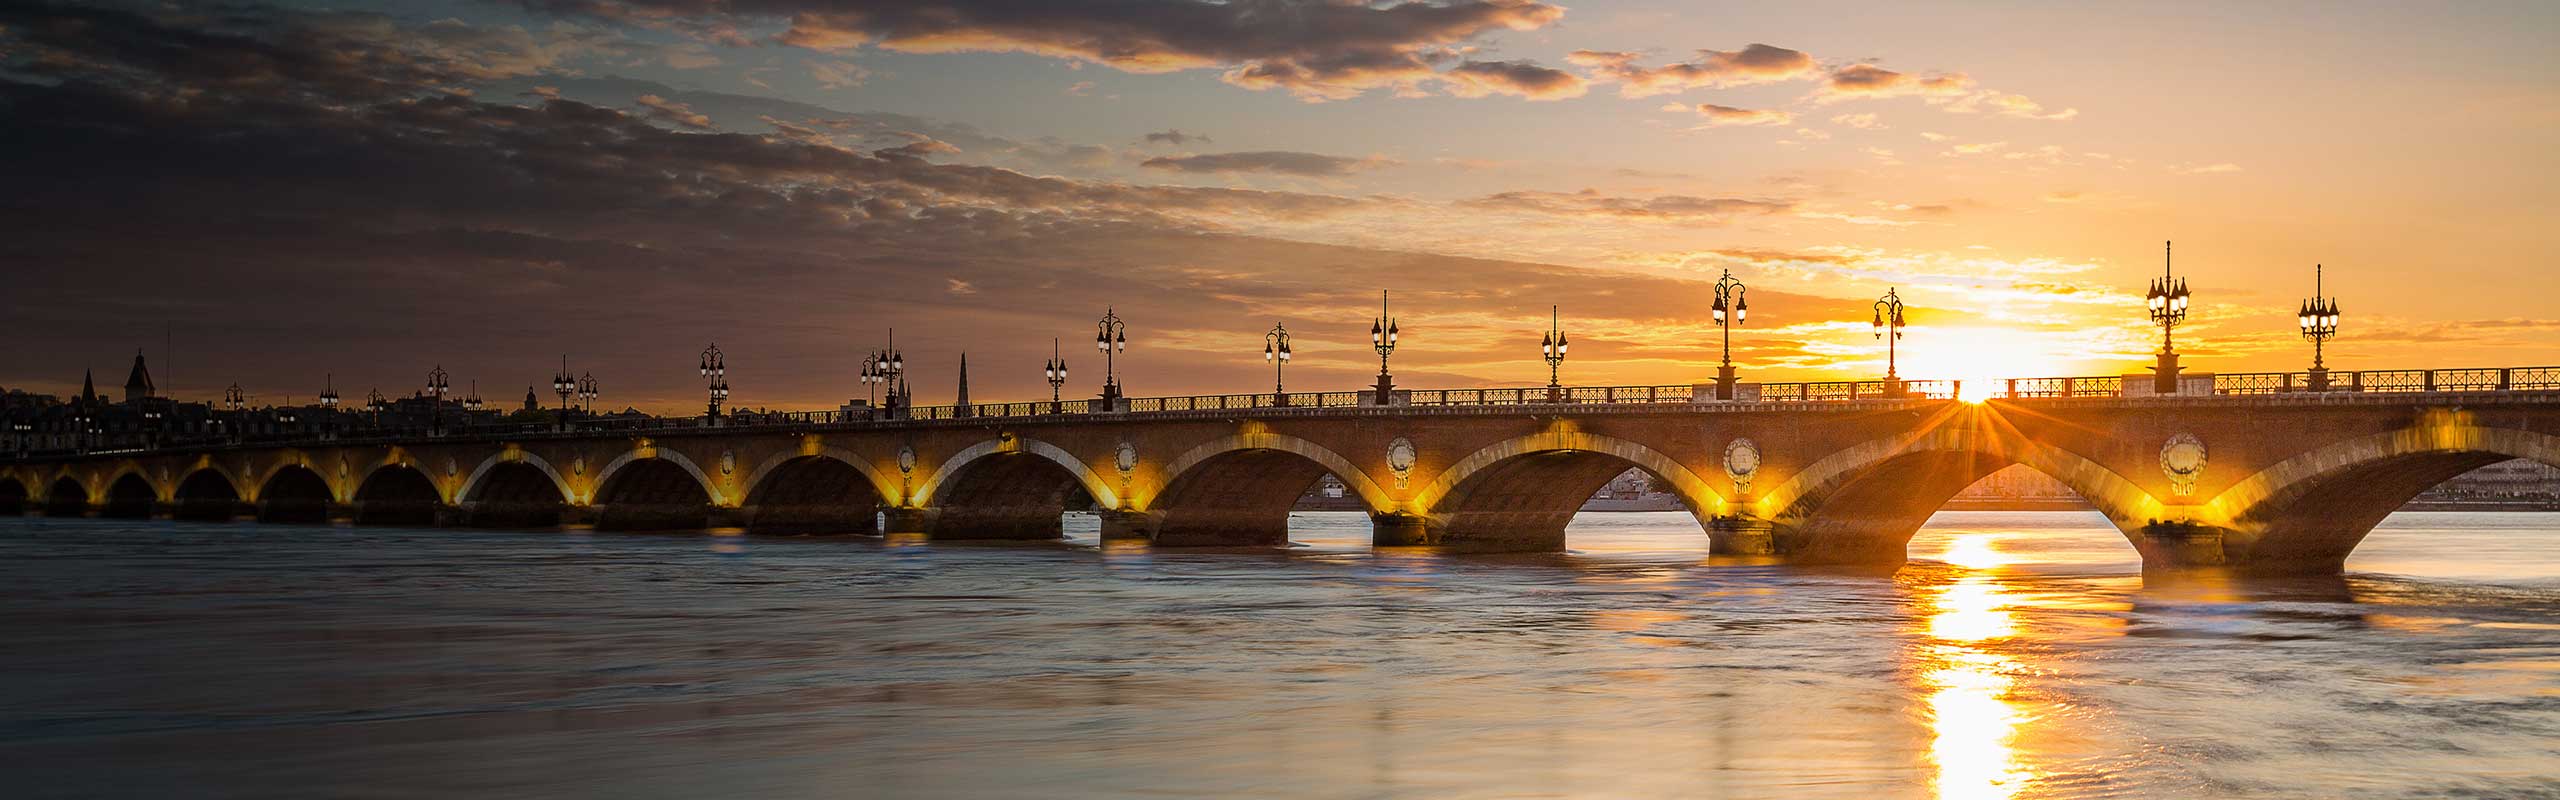 Pont de pierre in Bordeaux